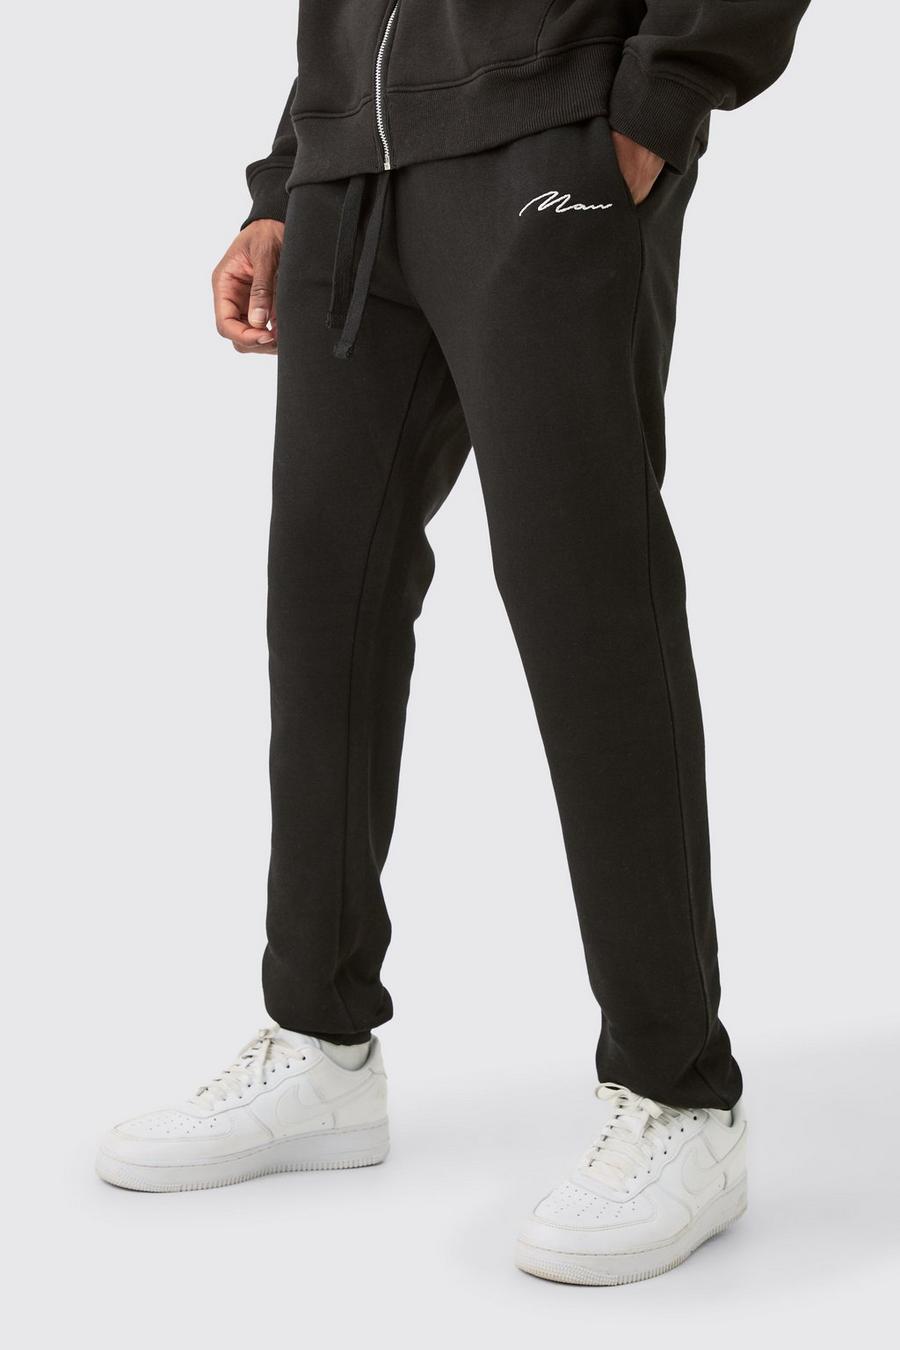 Pantaloni tuta Tall Skinny Fit neri con firma Man, Black image number 1